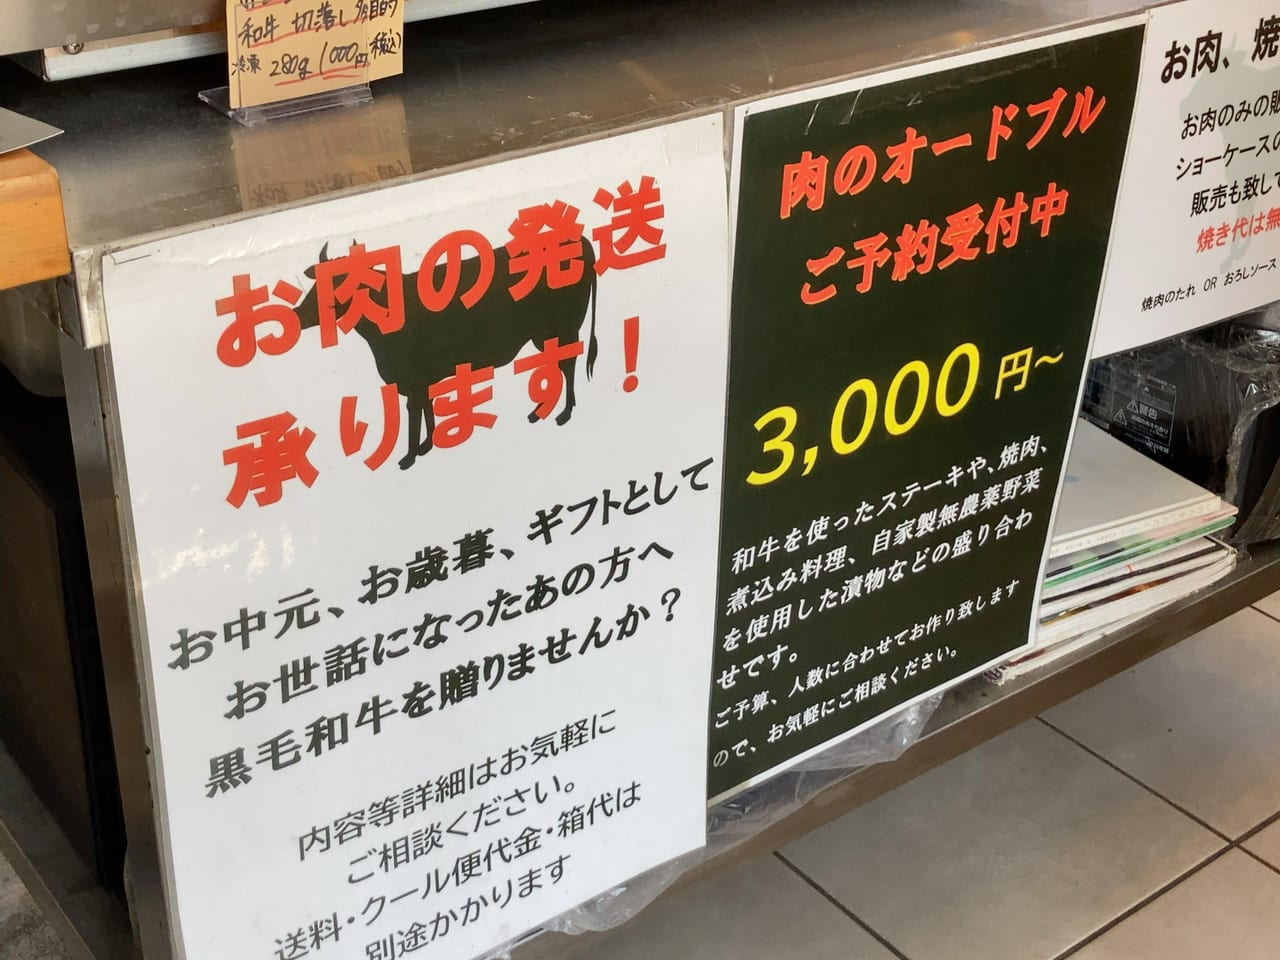 ももち浜ストアにも出演した事がある黒毛和牛専門店「熊泰精肉堂」は、JR箱崎駅から徒歩で約1分の距離にあります。